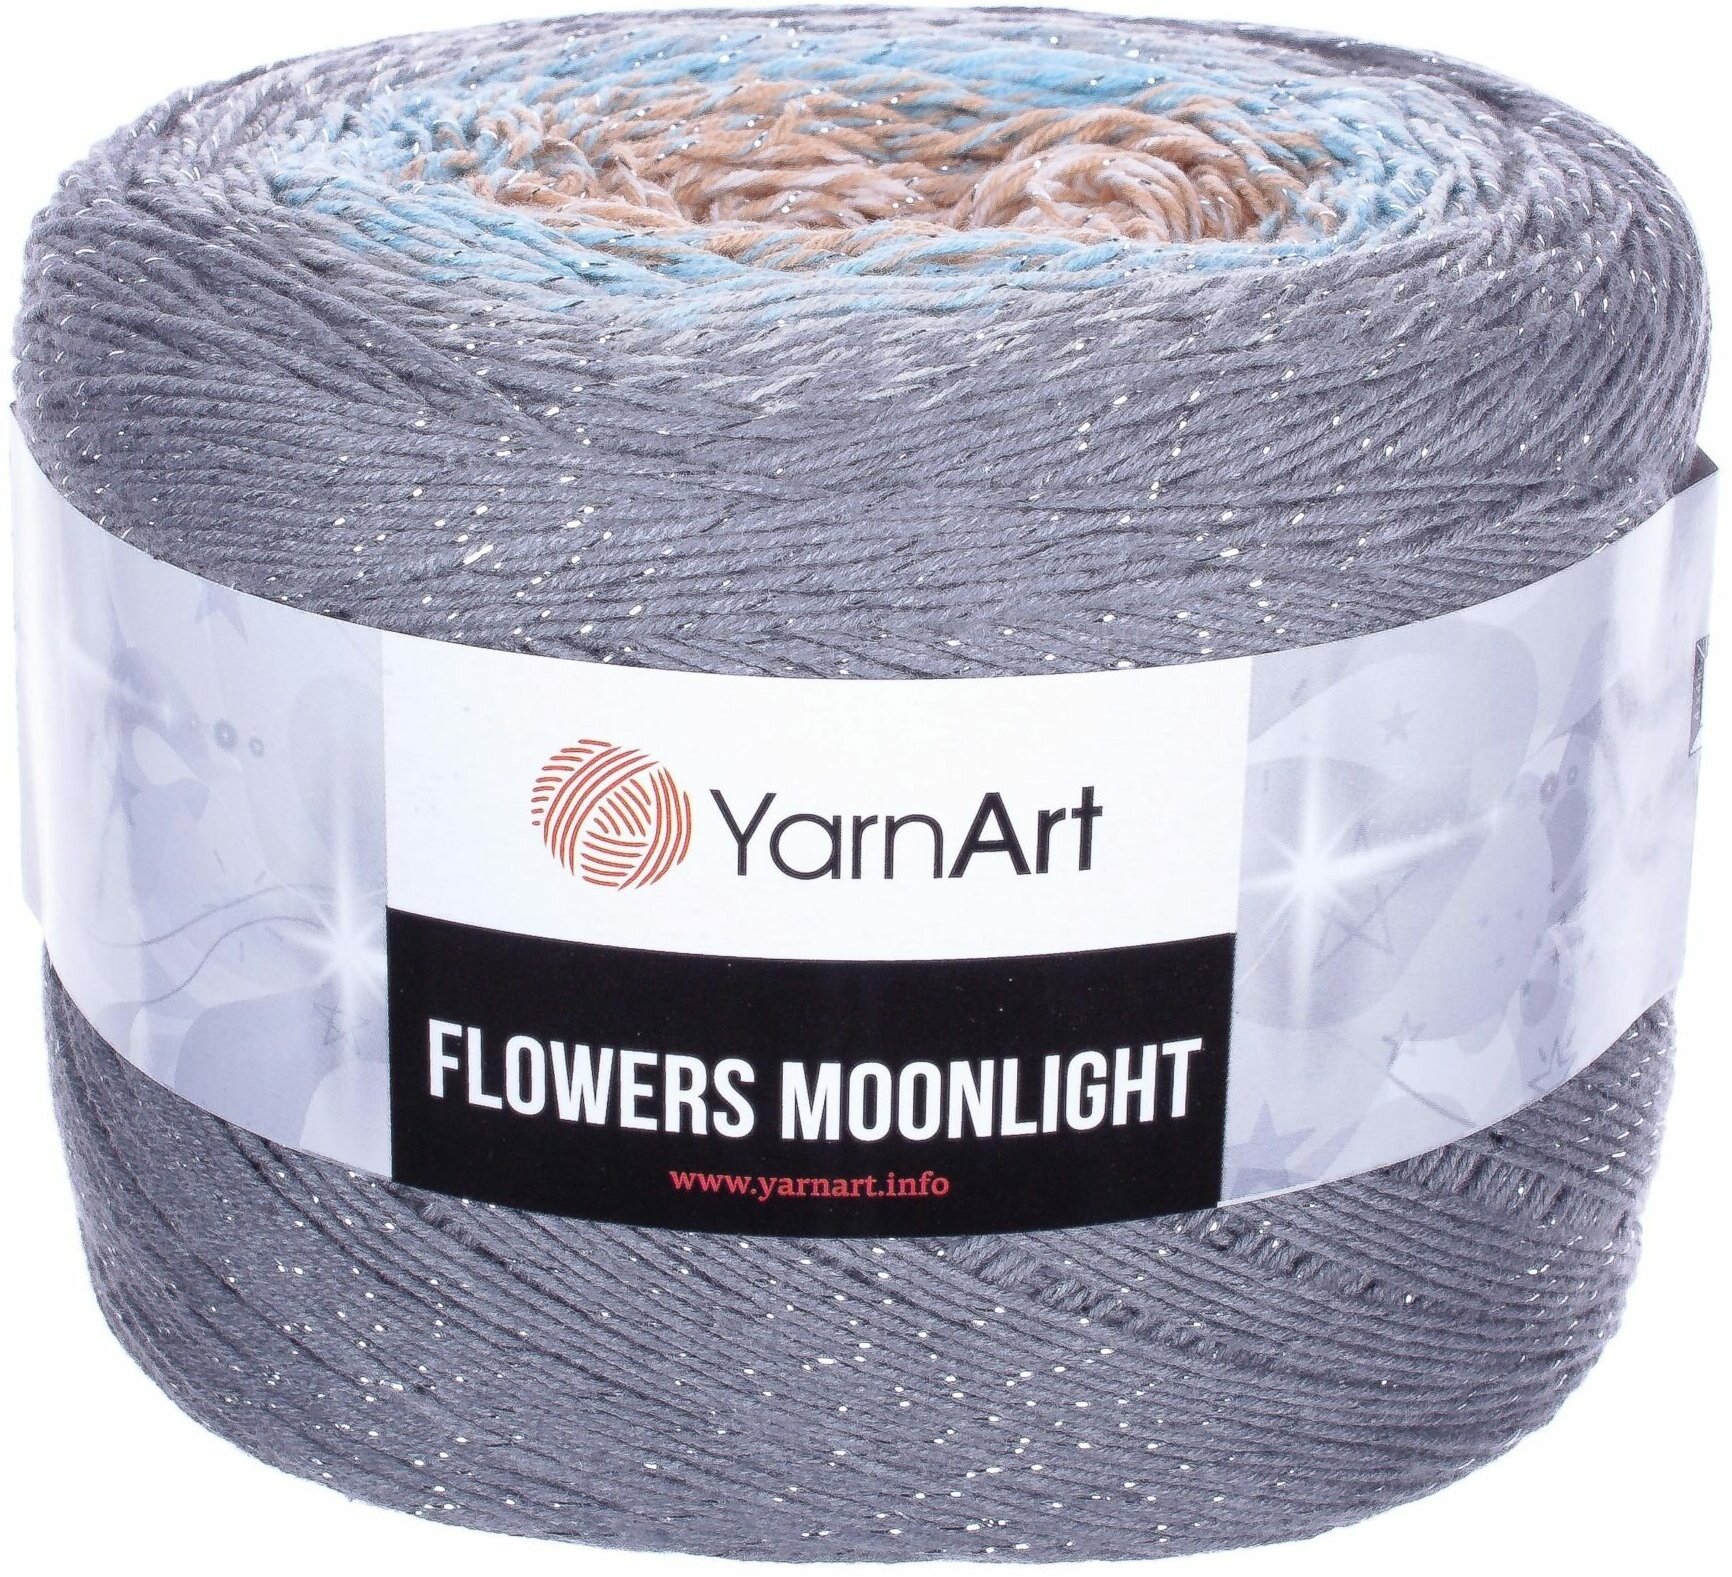 Пряжа YarnArt Flowers Moonlight светло-серый-голубой-песочный-белый (3268), 53%хлопок/43%акрил/4%металлик, 1000м, 260г, 1шт